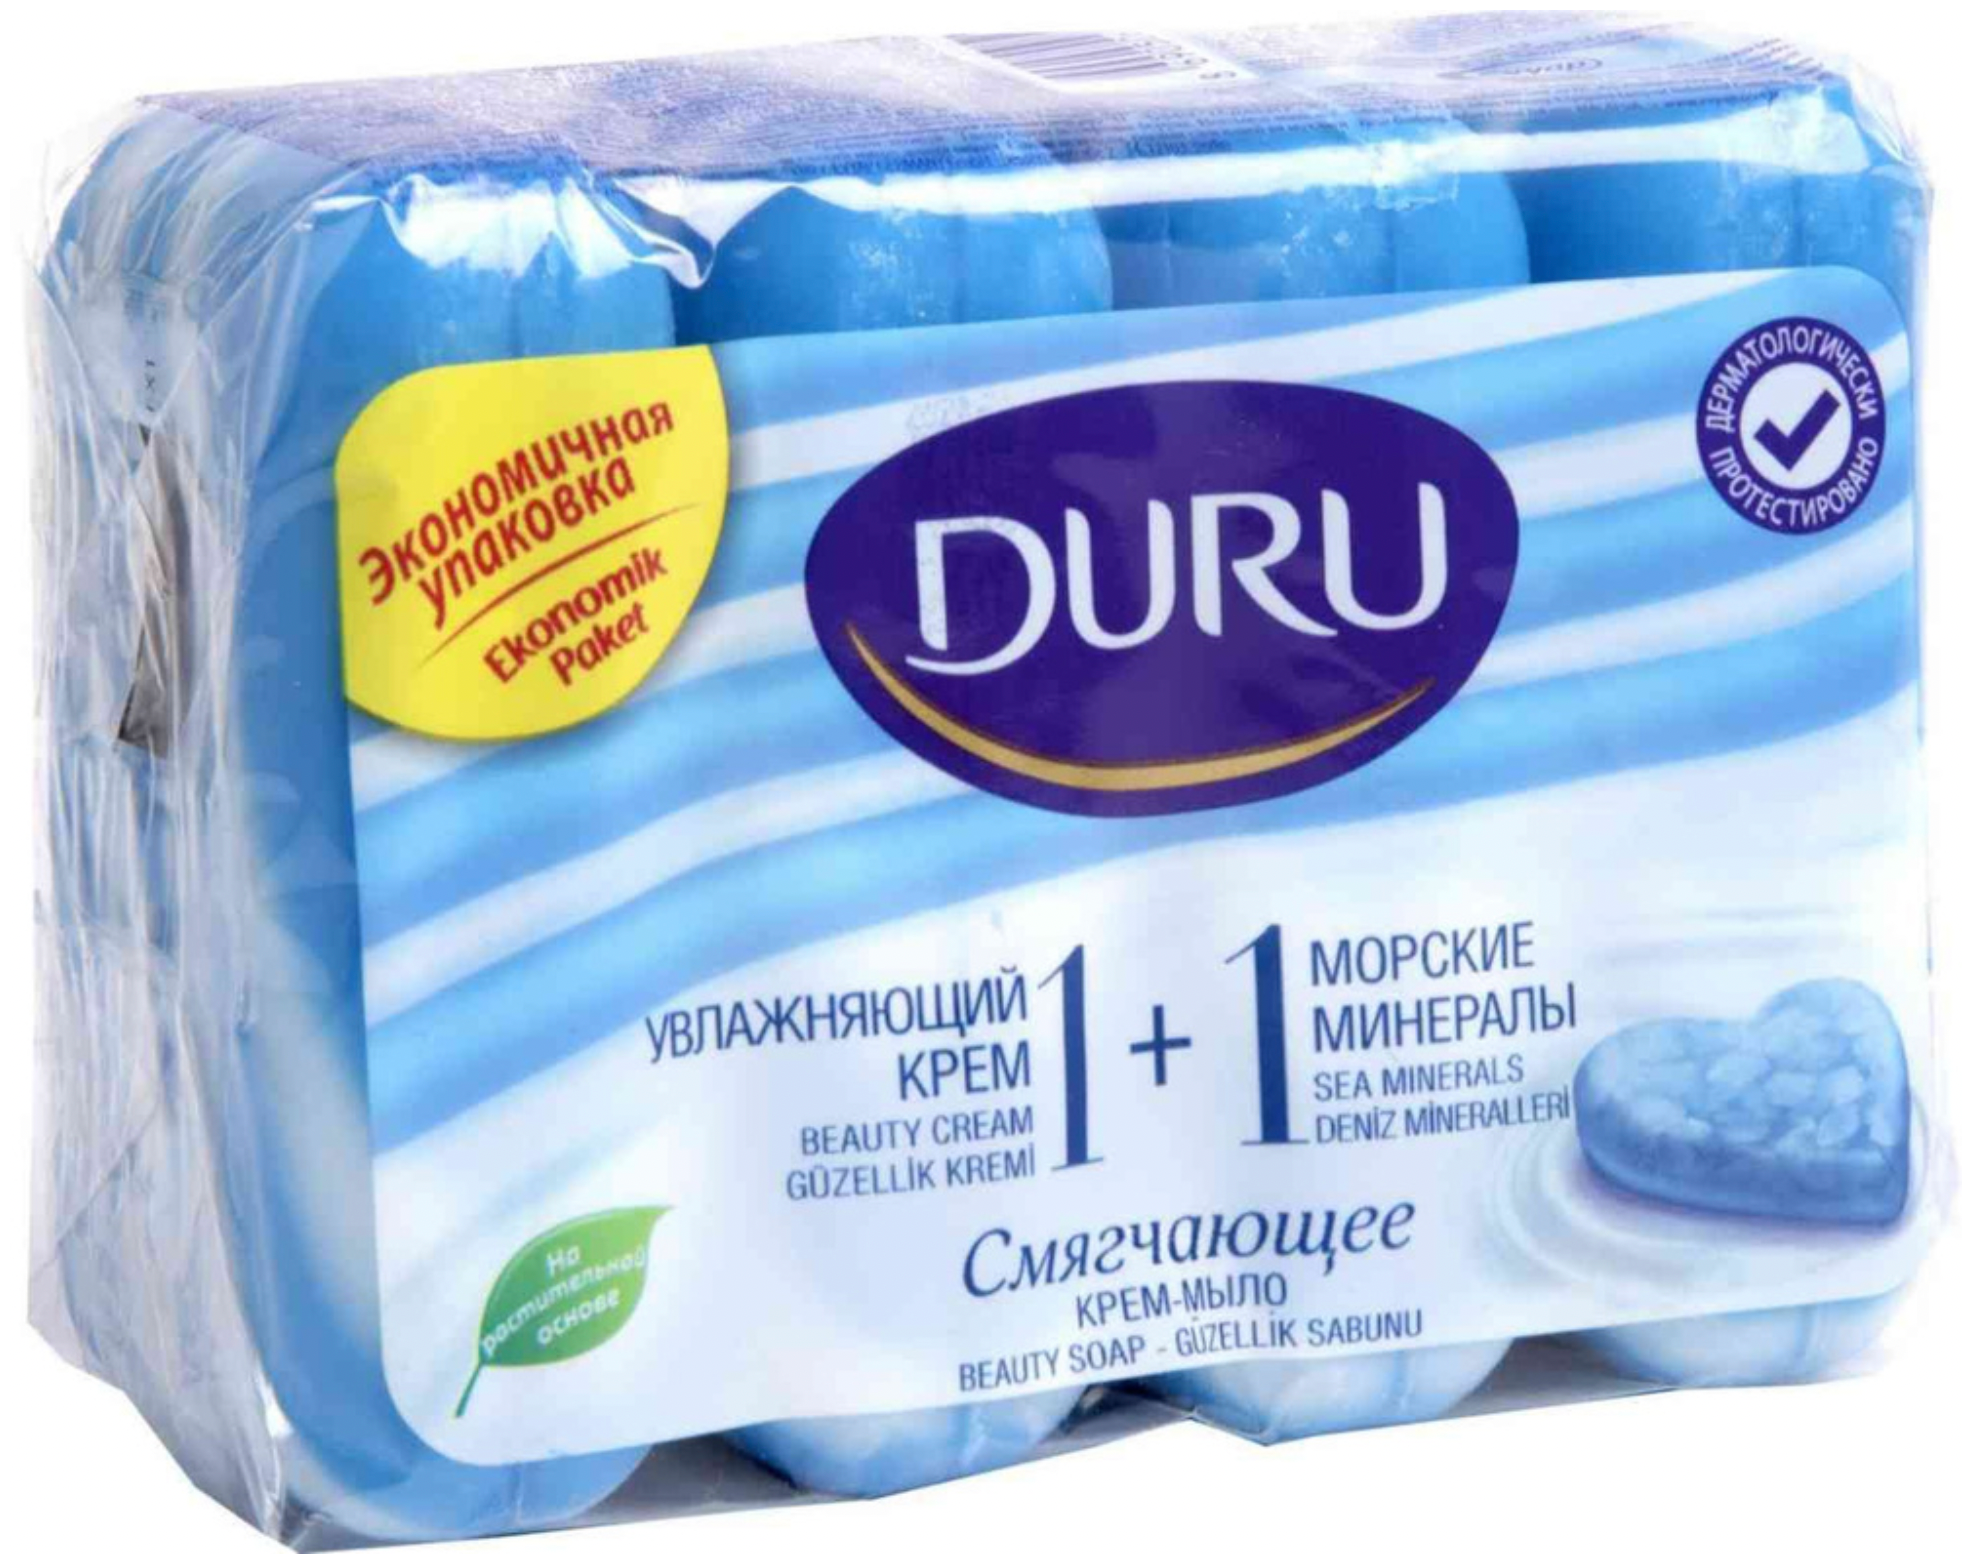 Дуру / Duru - Крем-мыло смягчающее 1+1 Увлажняющий крем и Морские минералы 4х90 г